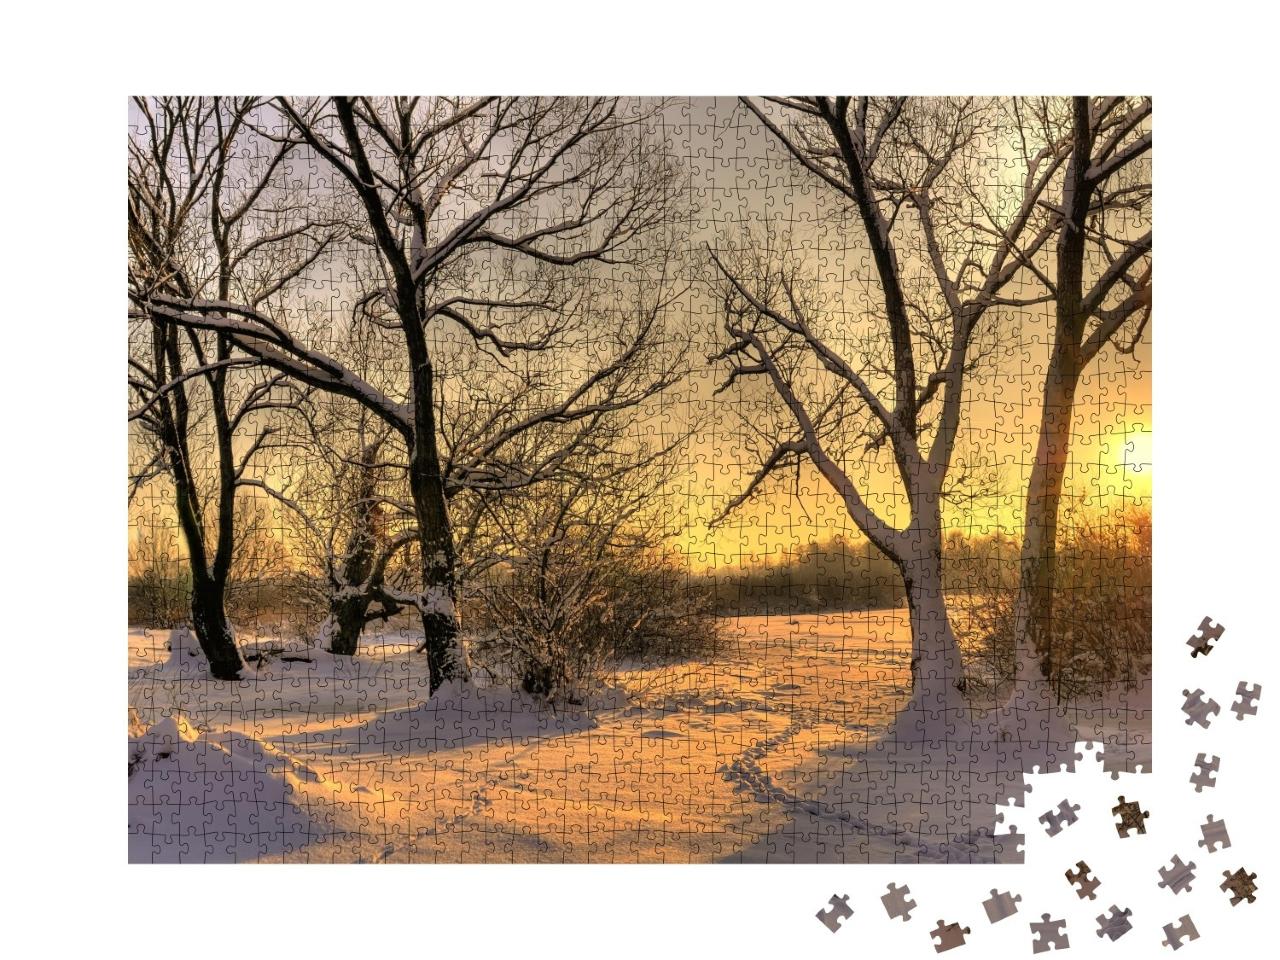 Puzzle de 1000 pièces « Beau coucher de soleil hivernal avec des arbres dans la neige »